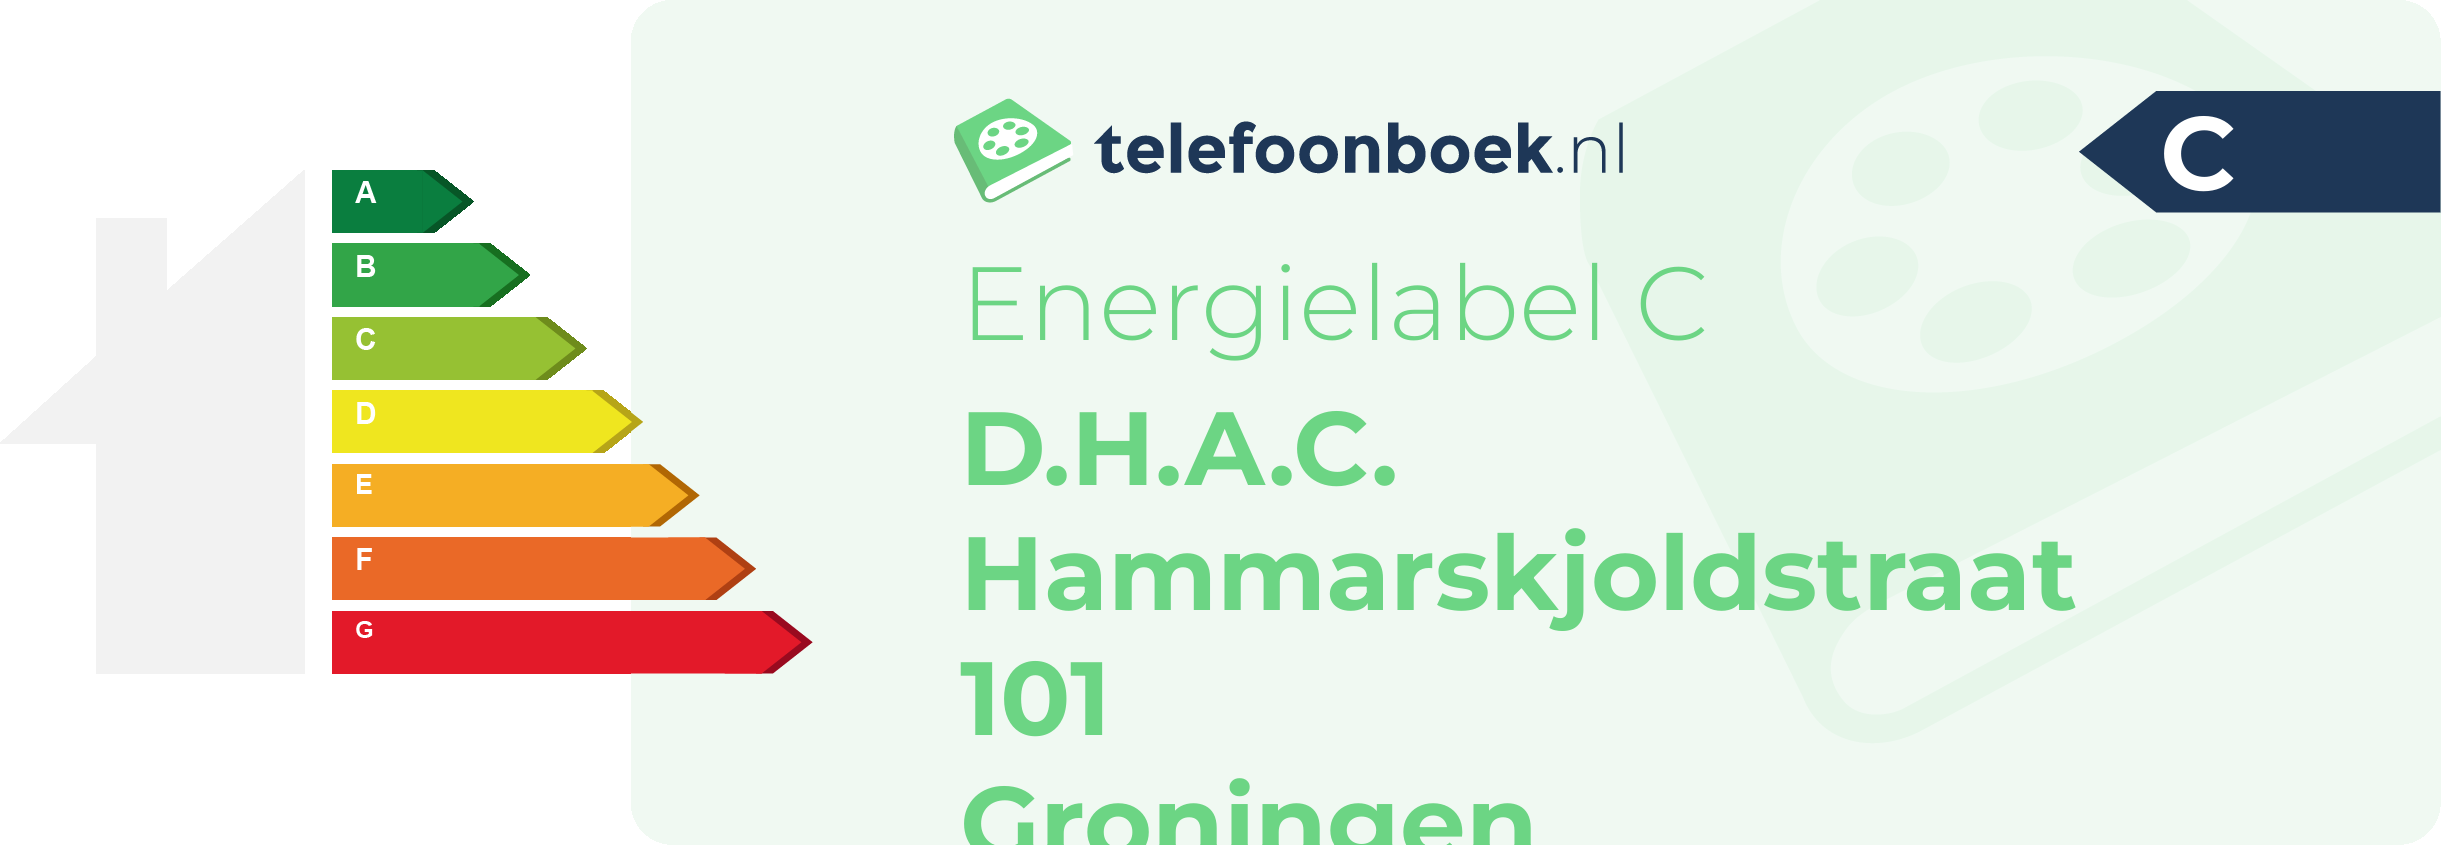 Energielabel D.H.A.C. Hammarskjoldstraat 101 Groningen